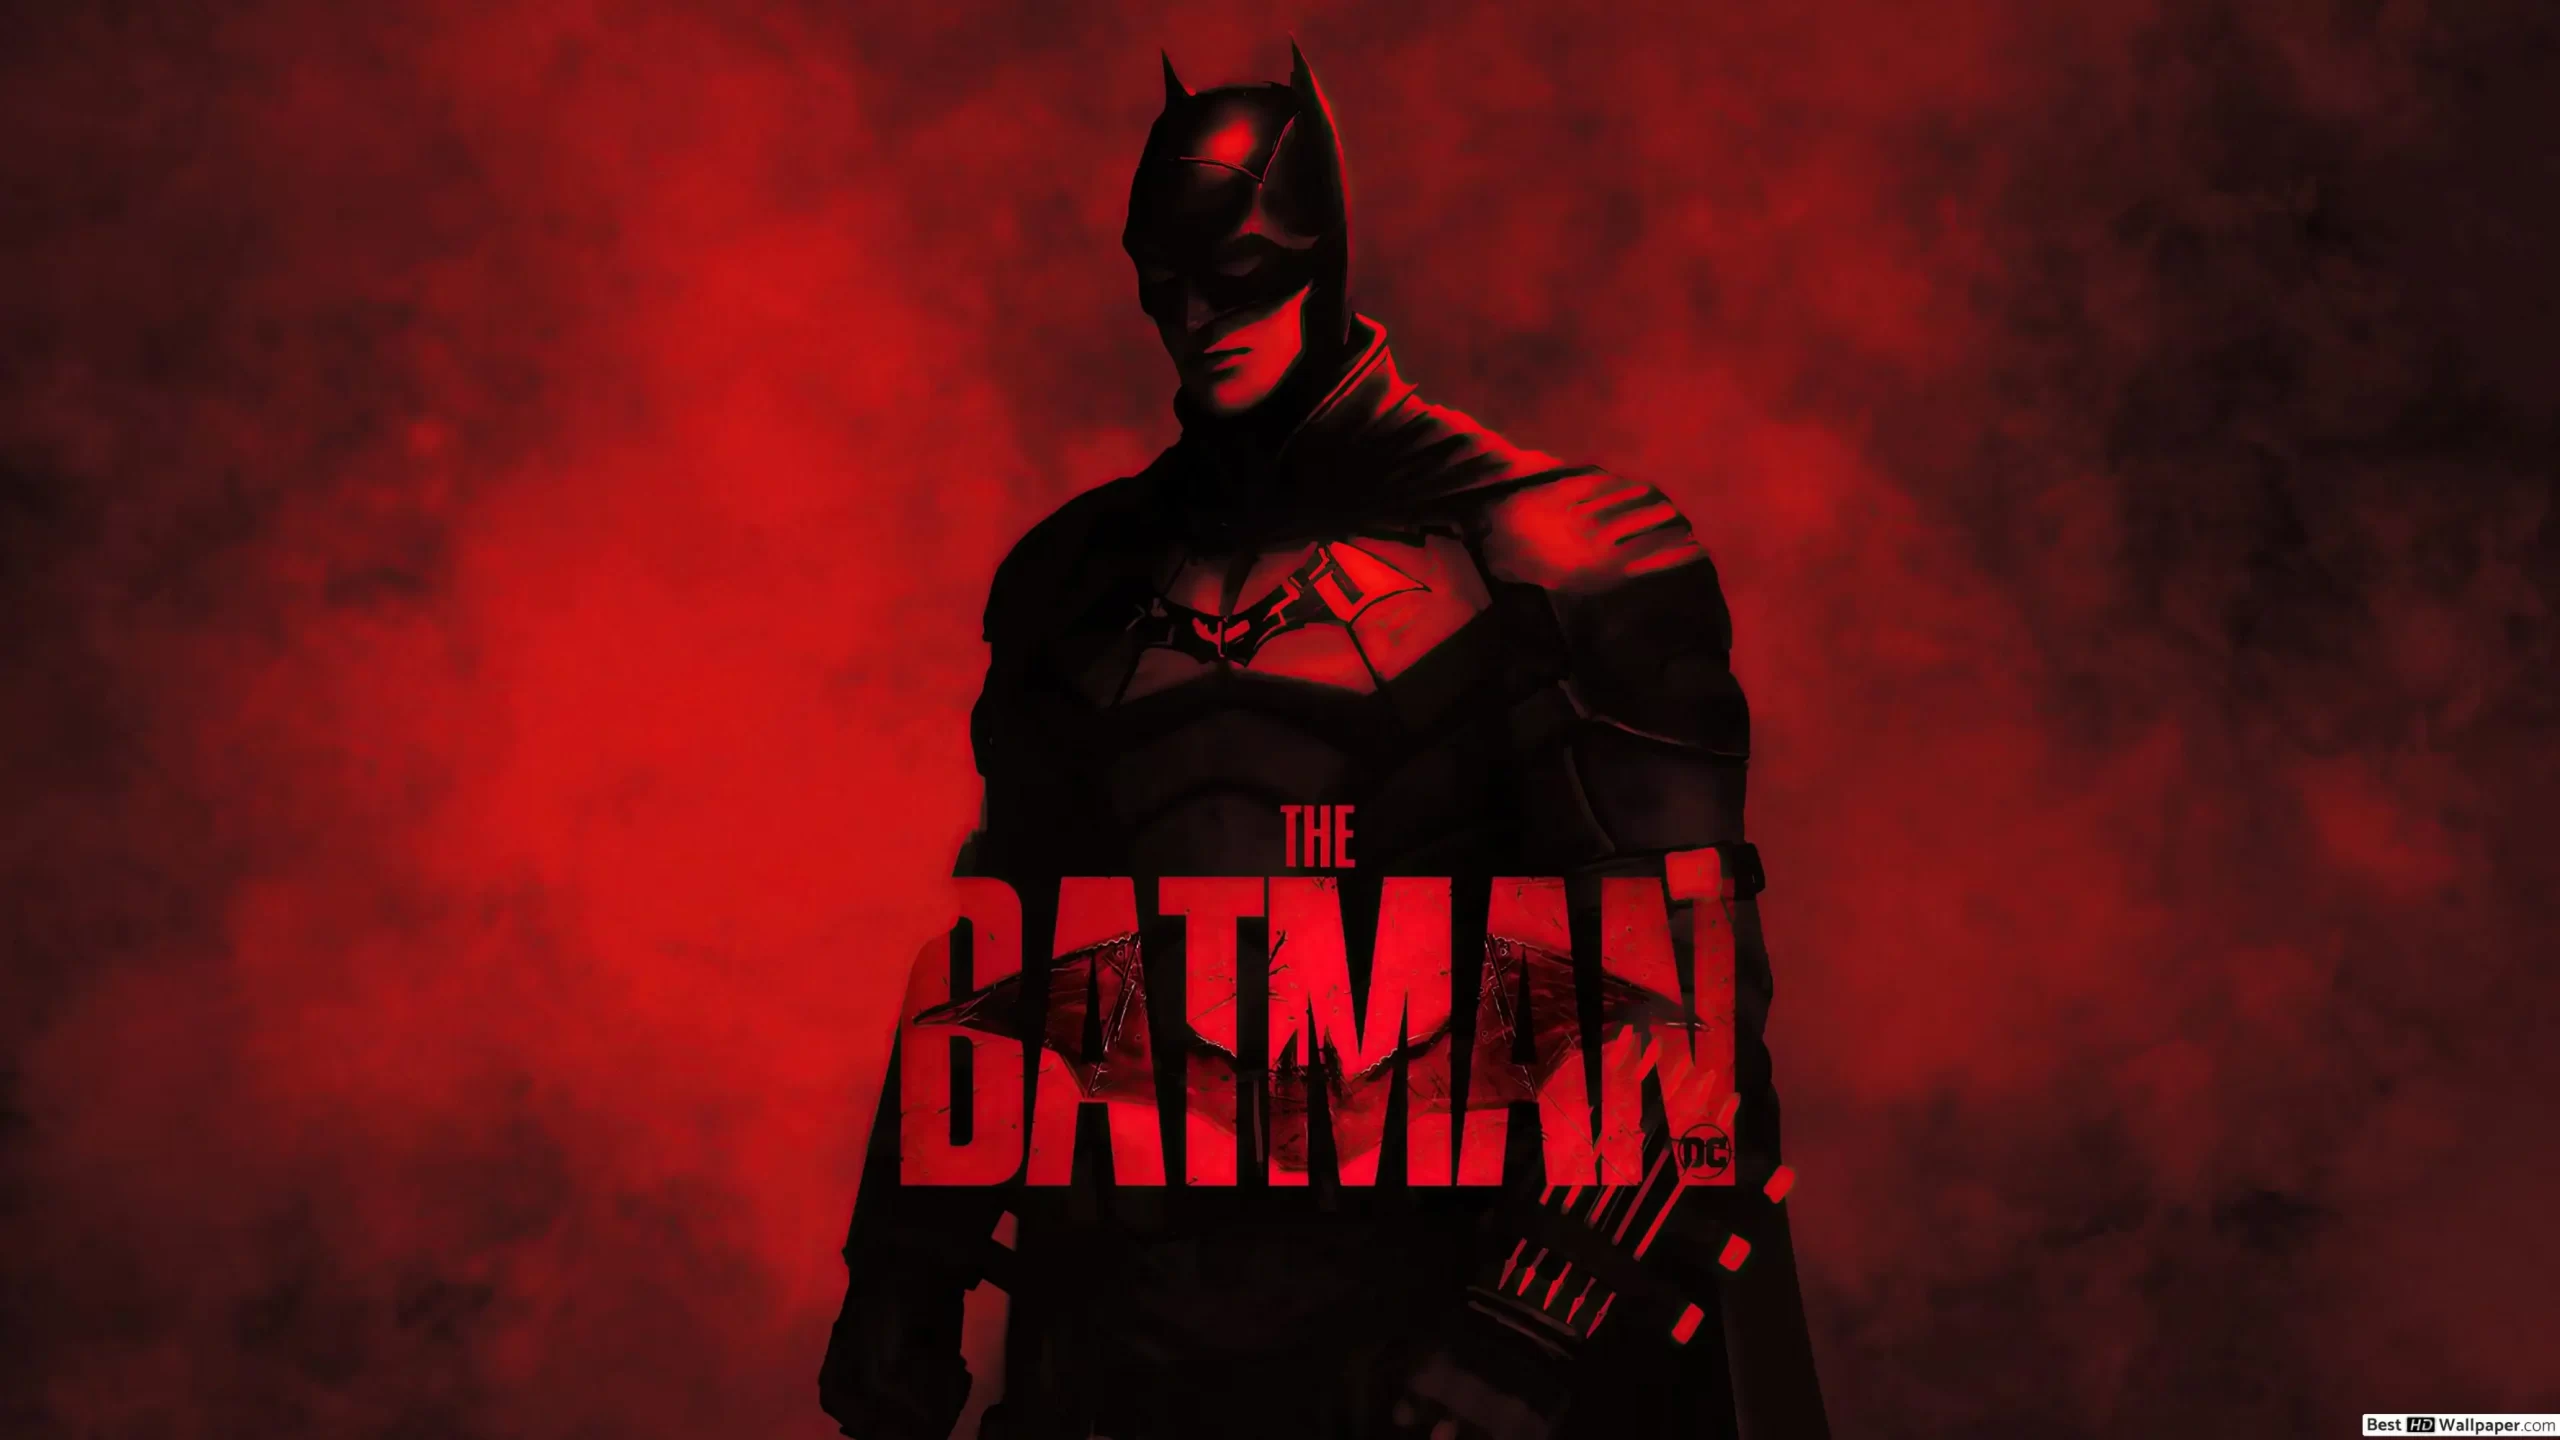 فیلم The Batman می تواند در این آخر هفته ۲۴۵ میلیون دلار در سراسر جهان به دست بیاورد